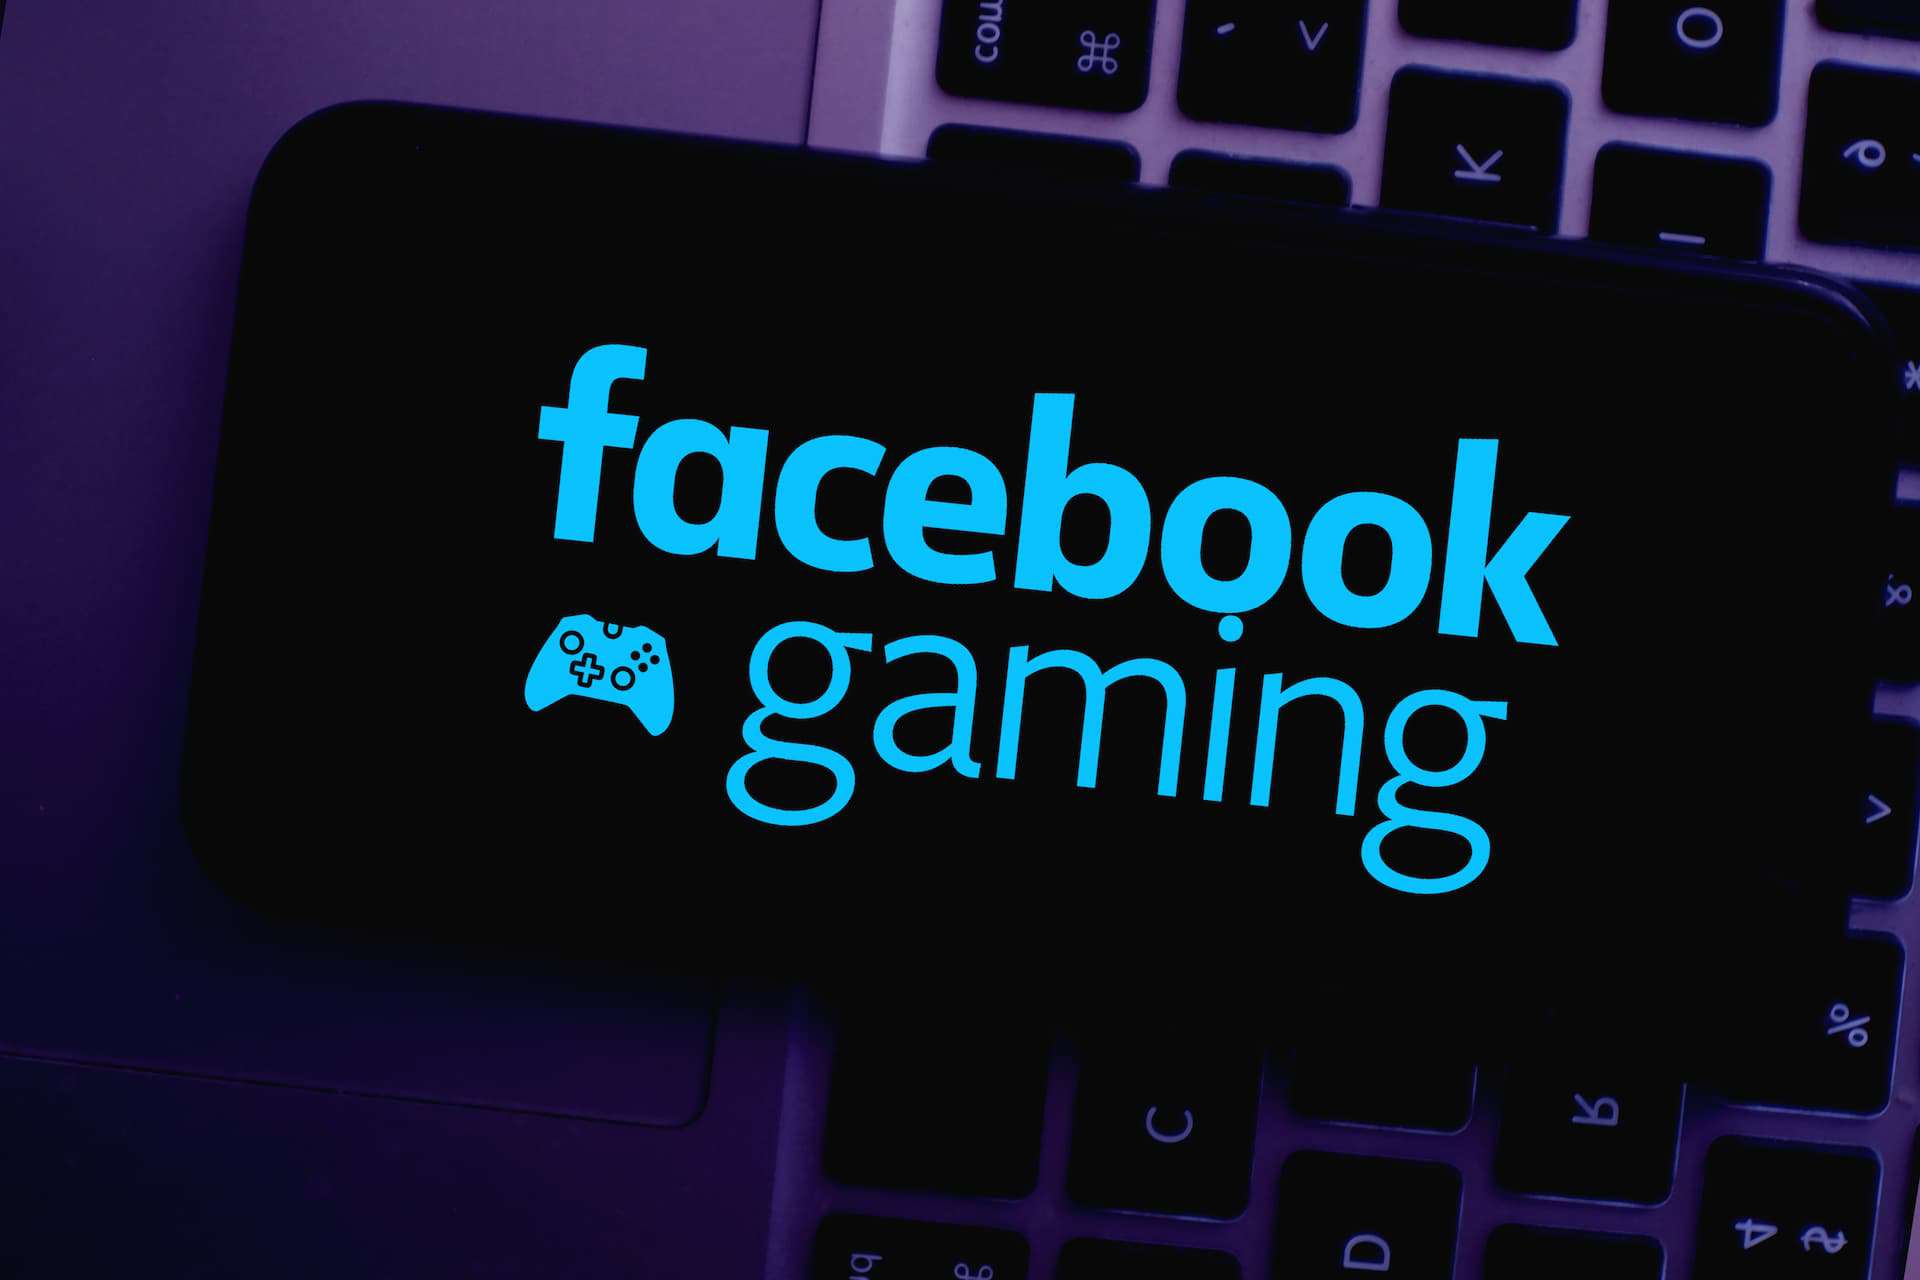 Facebook Gaming logo on phone